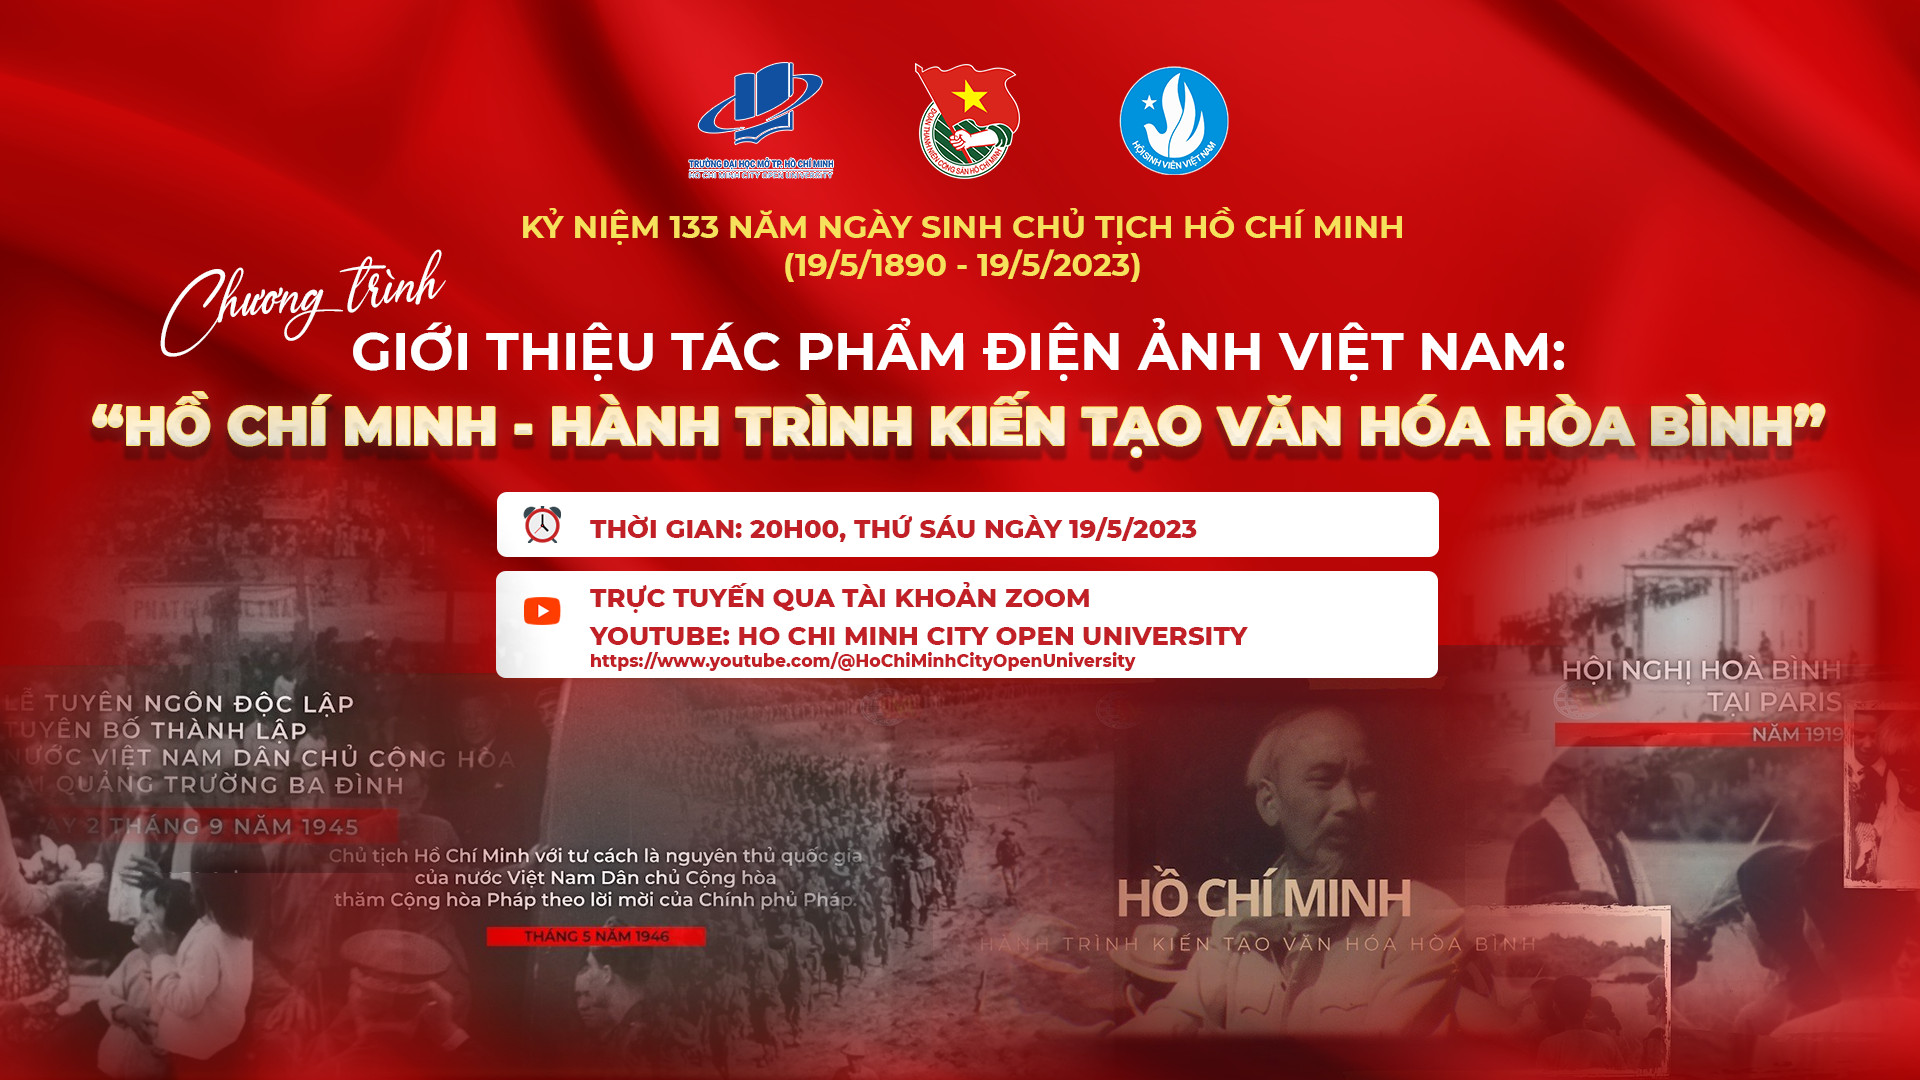 Thông báo về việc Tổ chức báo cáo chuyên đề nhân kỷ niệm 133 năm Ngày sinh Chủ tịch Hồ Chí Minh (19/5/1890 – 19/5/2023)